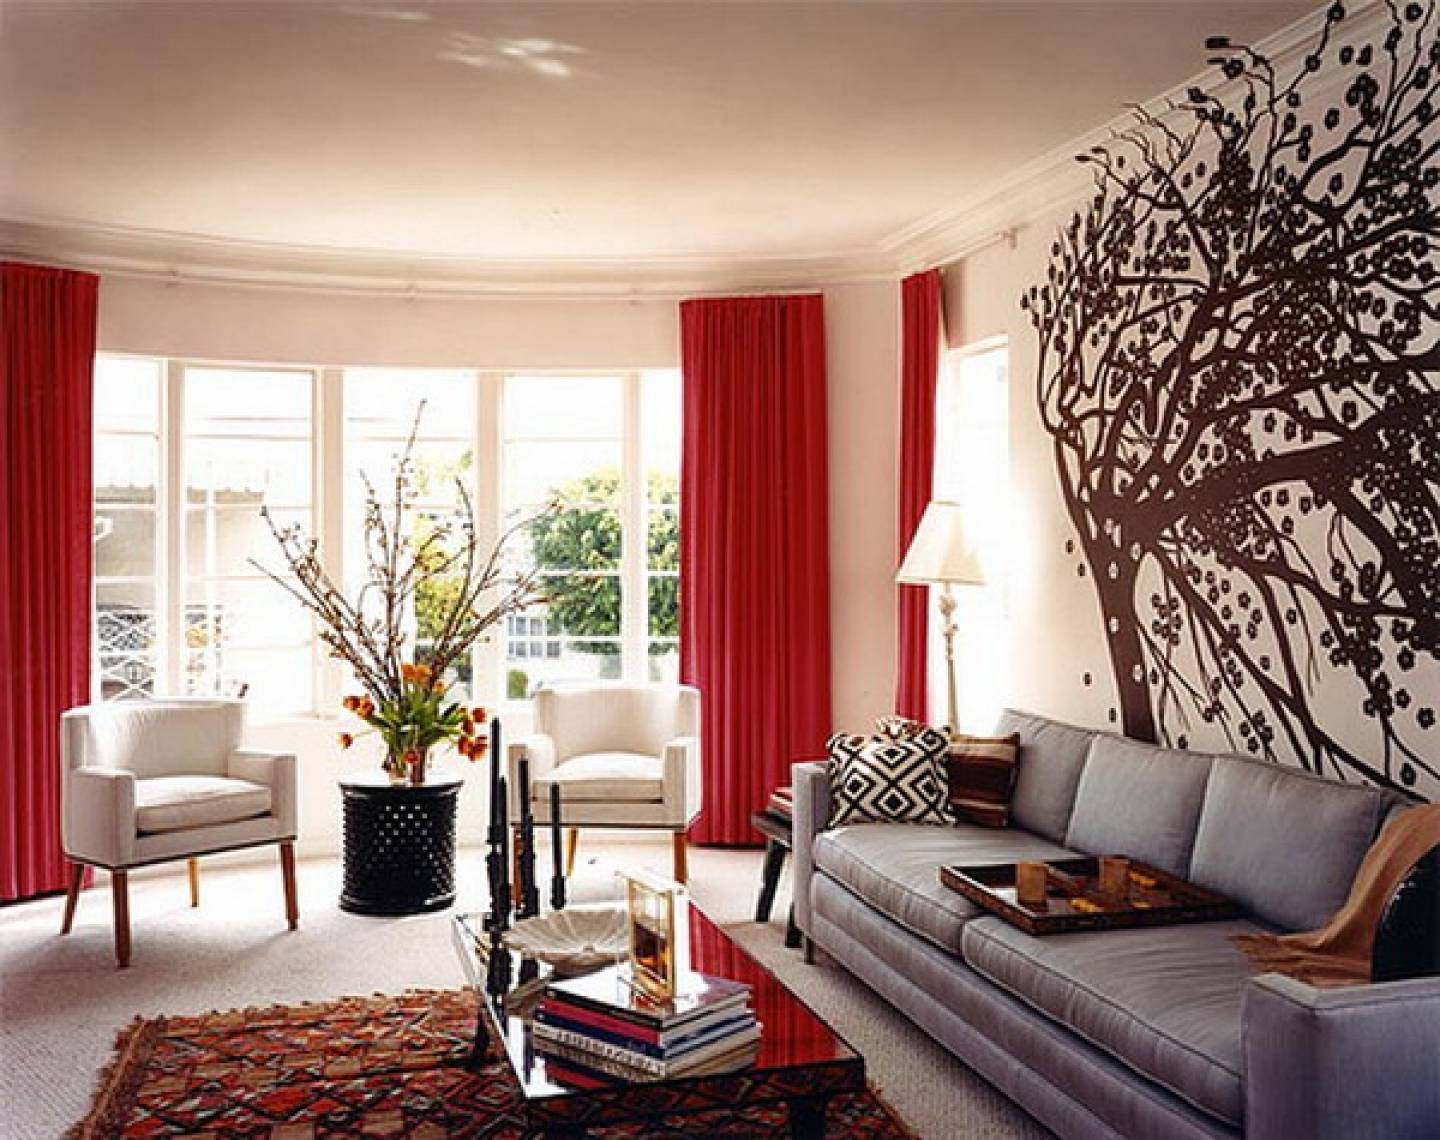  Rèm cửa màu đỏ giúp không gian nhà trở nên rực rỡ và quyến rũ hơn.